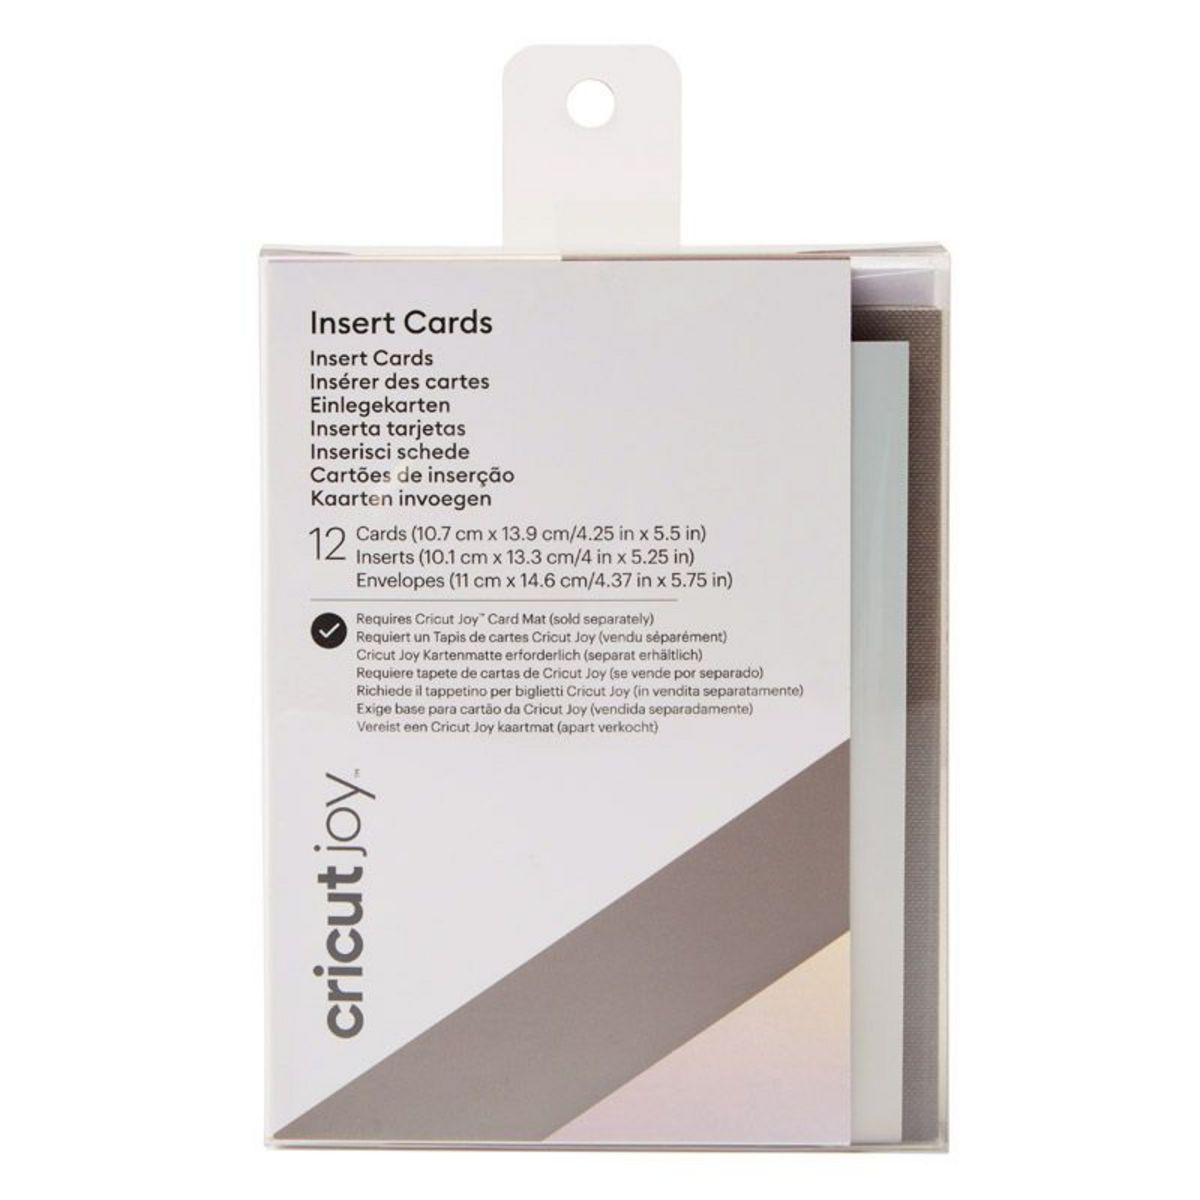 CRICUT 12 cartes et enveloppes gris et holographique 13,9 x 10,7 cm Cricut